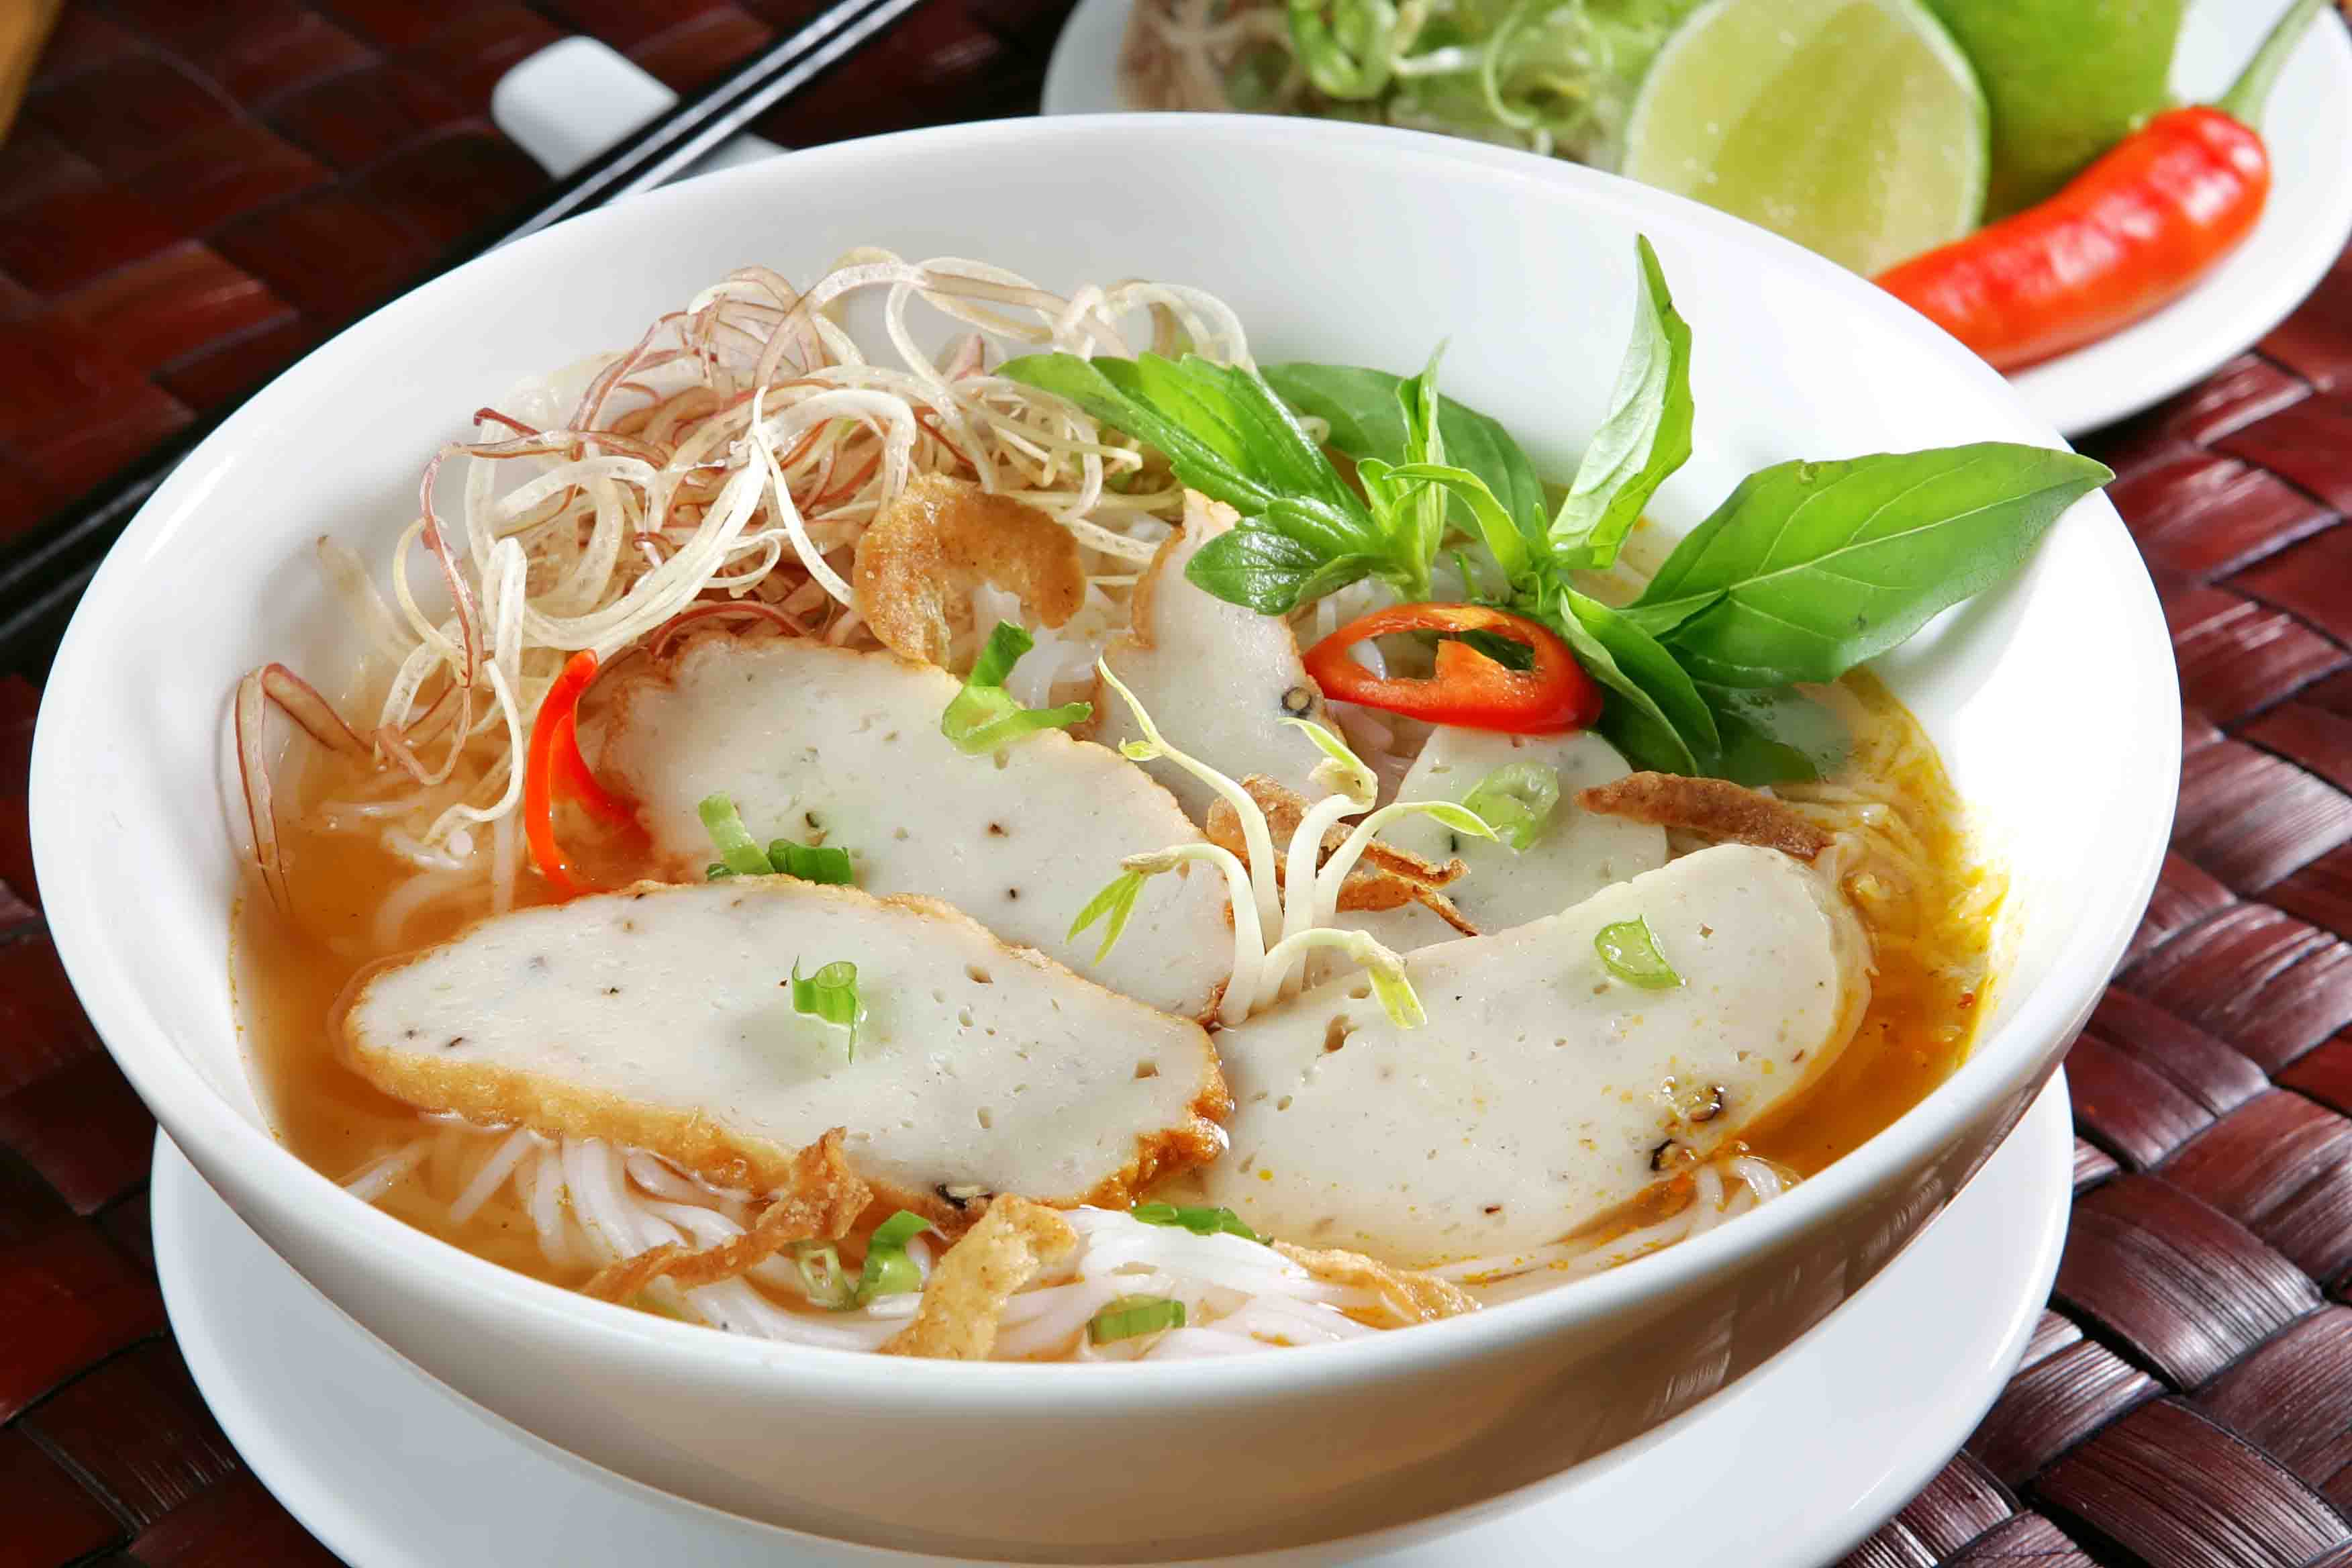 Bún chả cá là món ăn nổi tiếng của thành phố biển Nha Trang